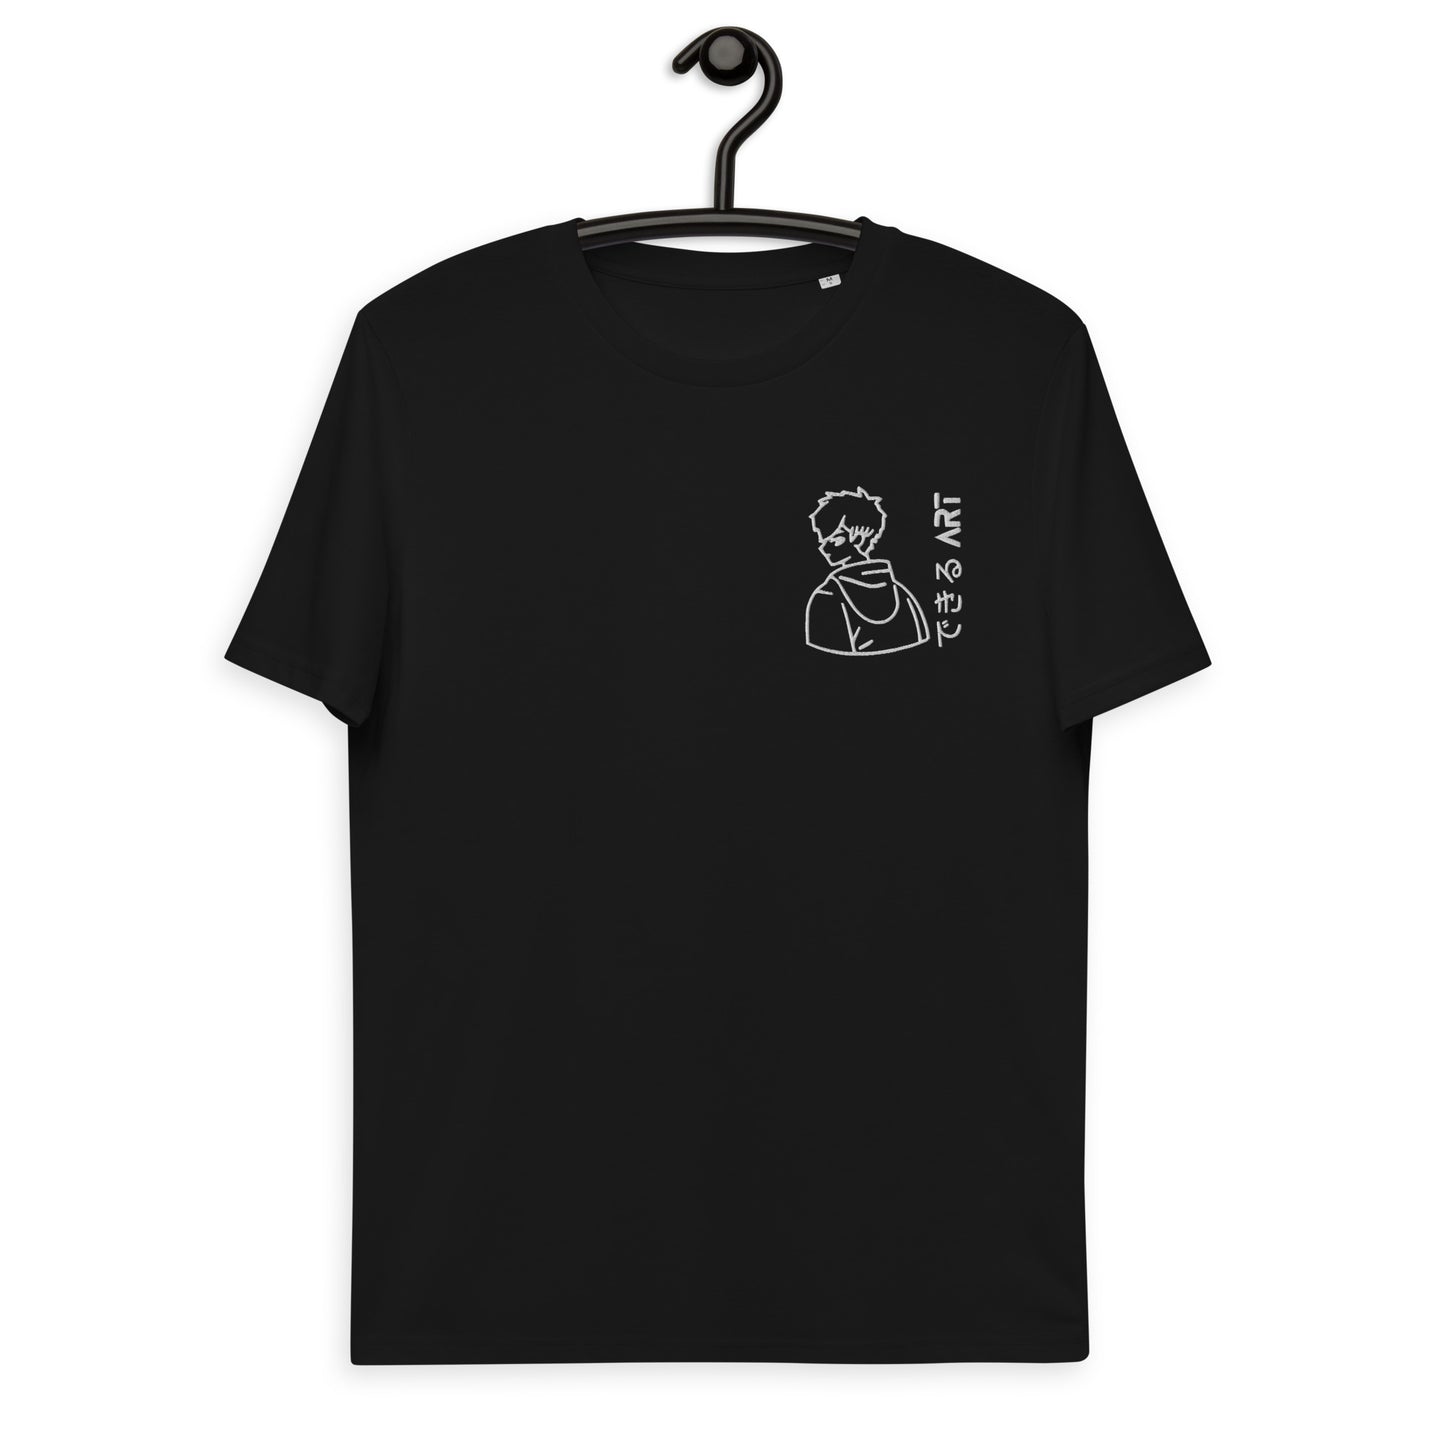 Dekiru Art Anime T-Shirt - Boy Logo